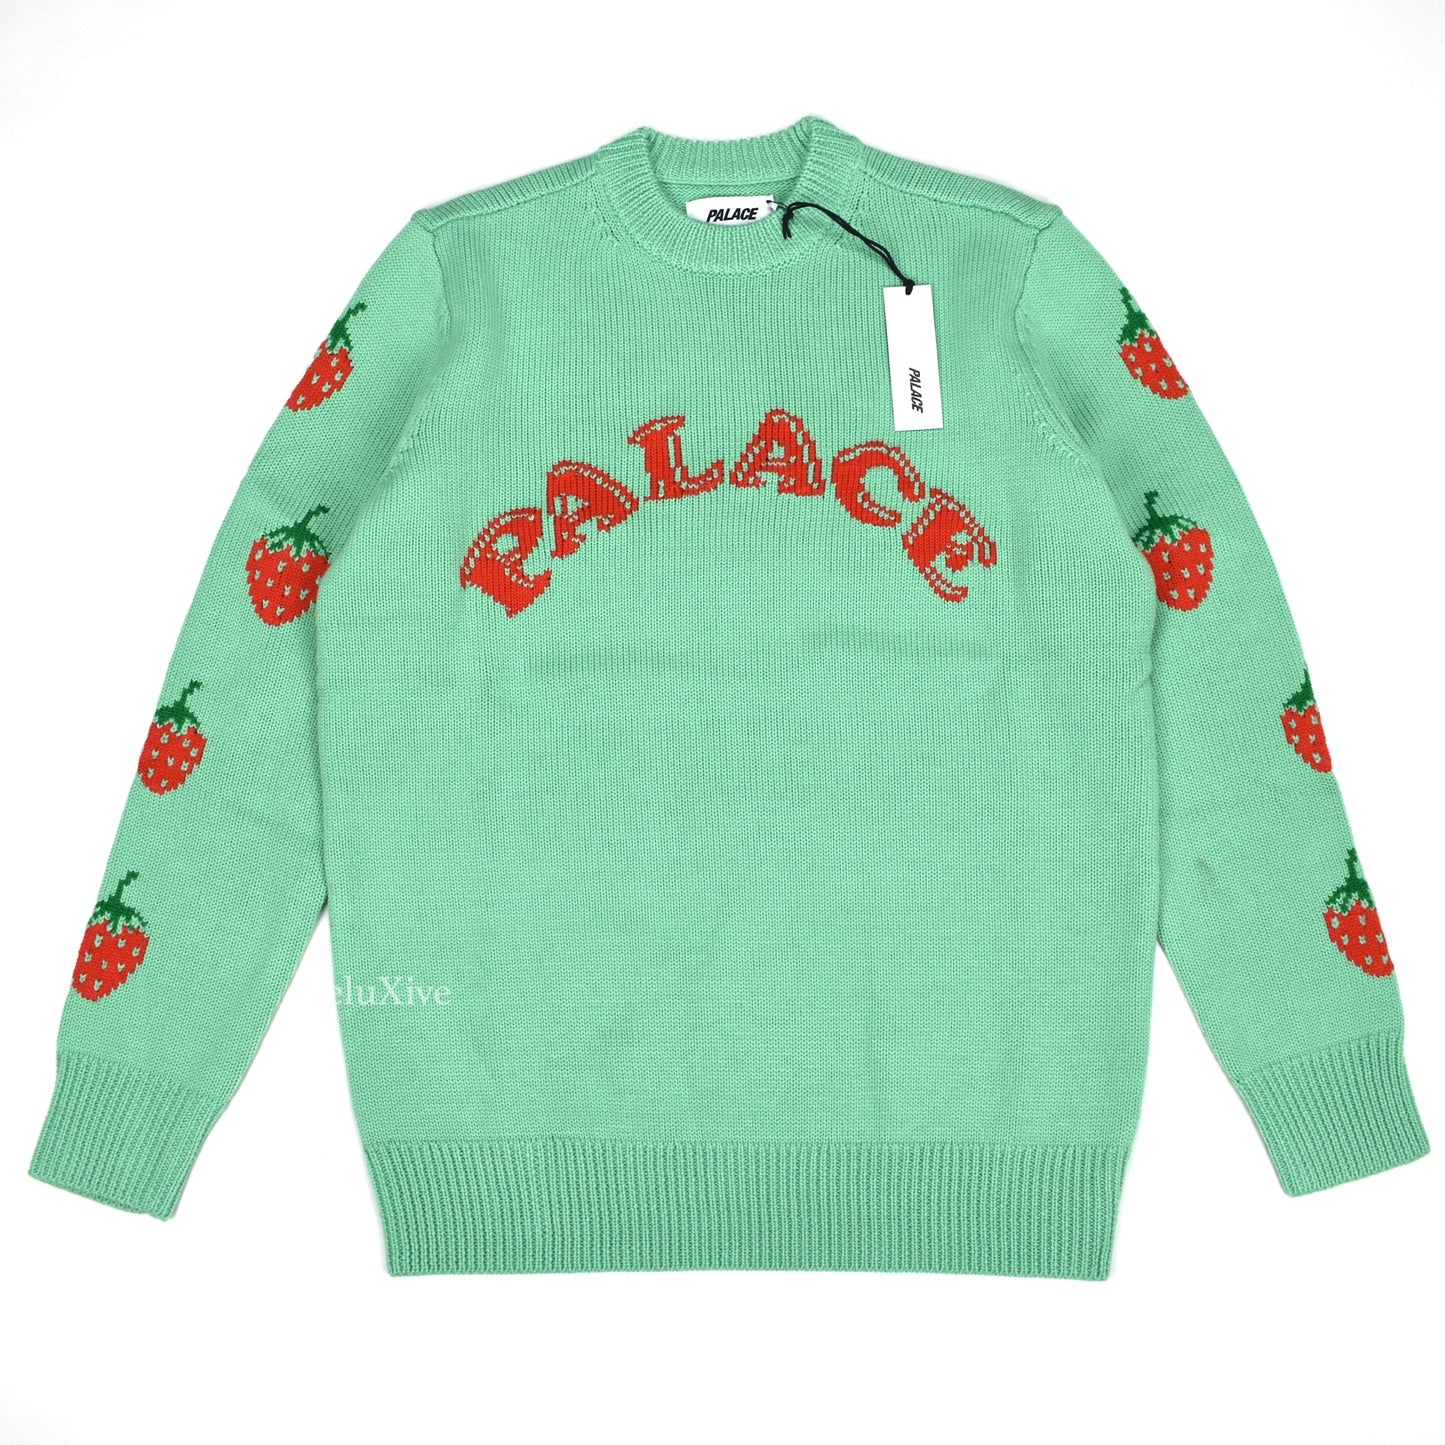 Palace - Green Strawberry Logo Knit Sweater